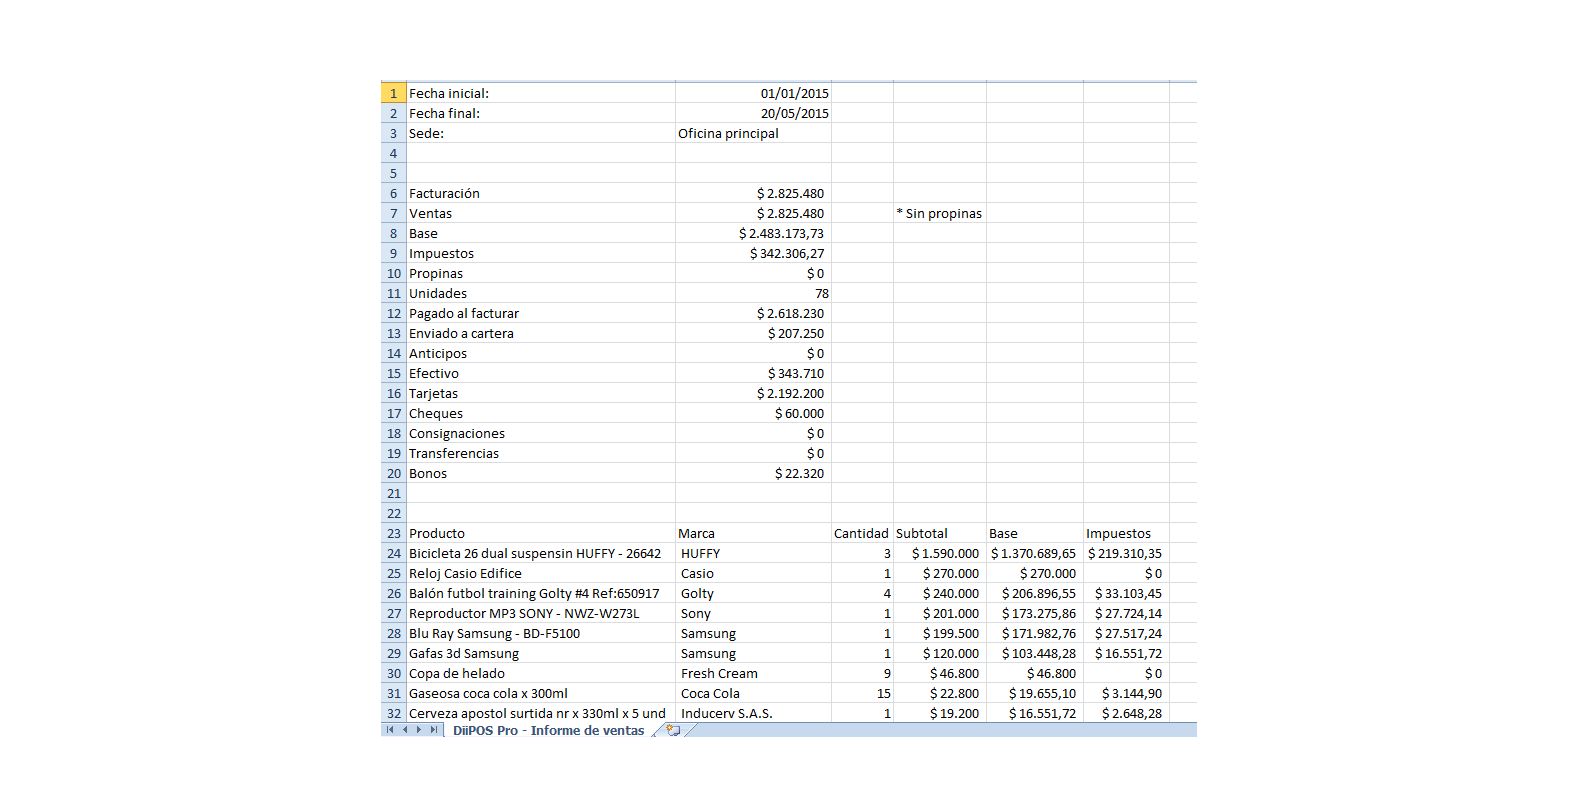 Informes y datos en archivos planos (compatible con Excel)